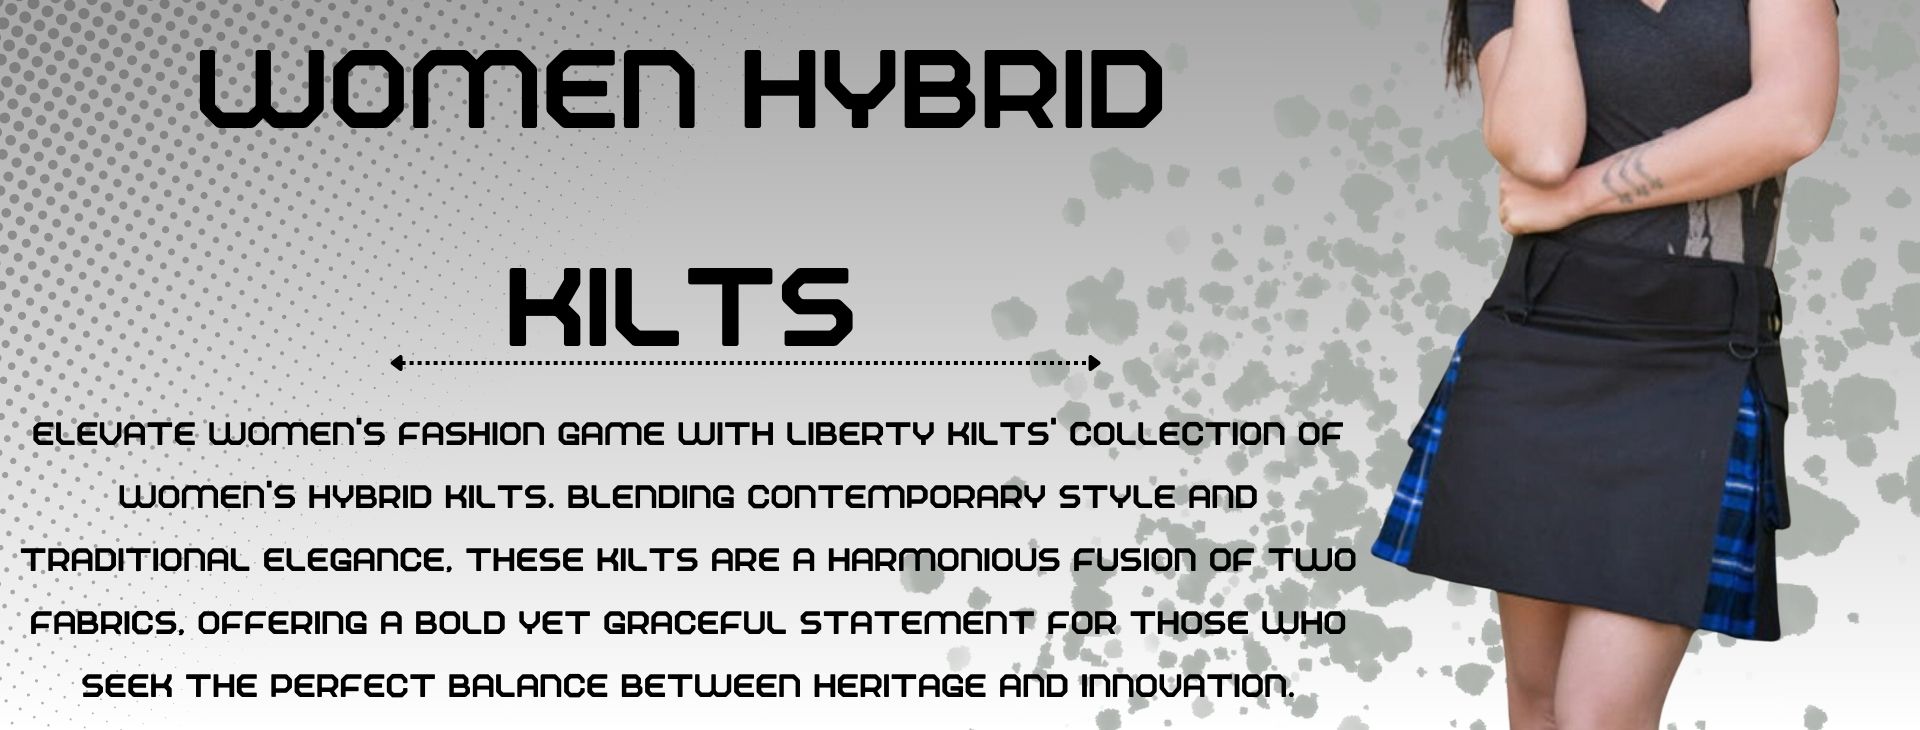 Hybrid Kilts For Women